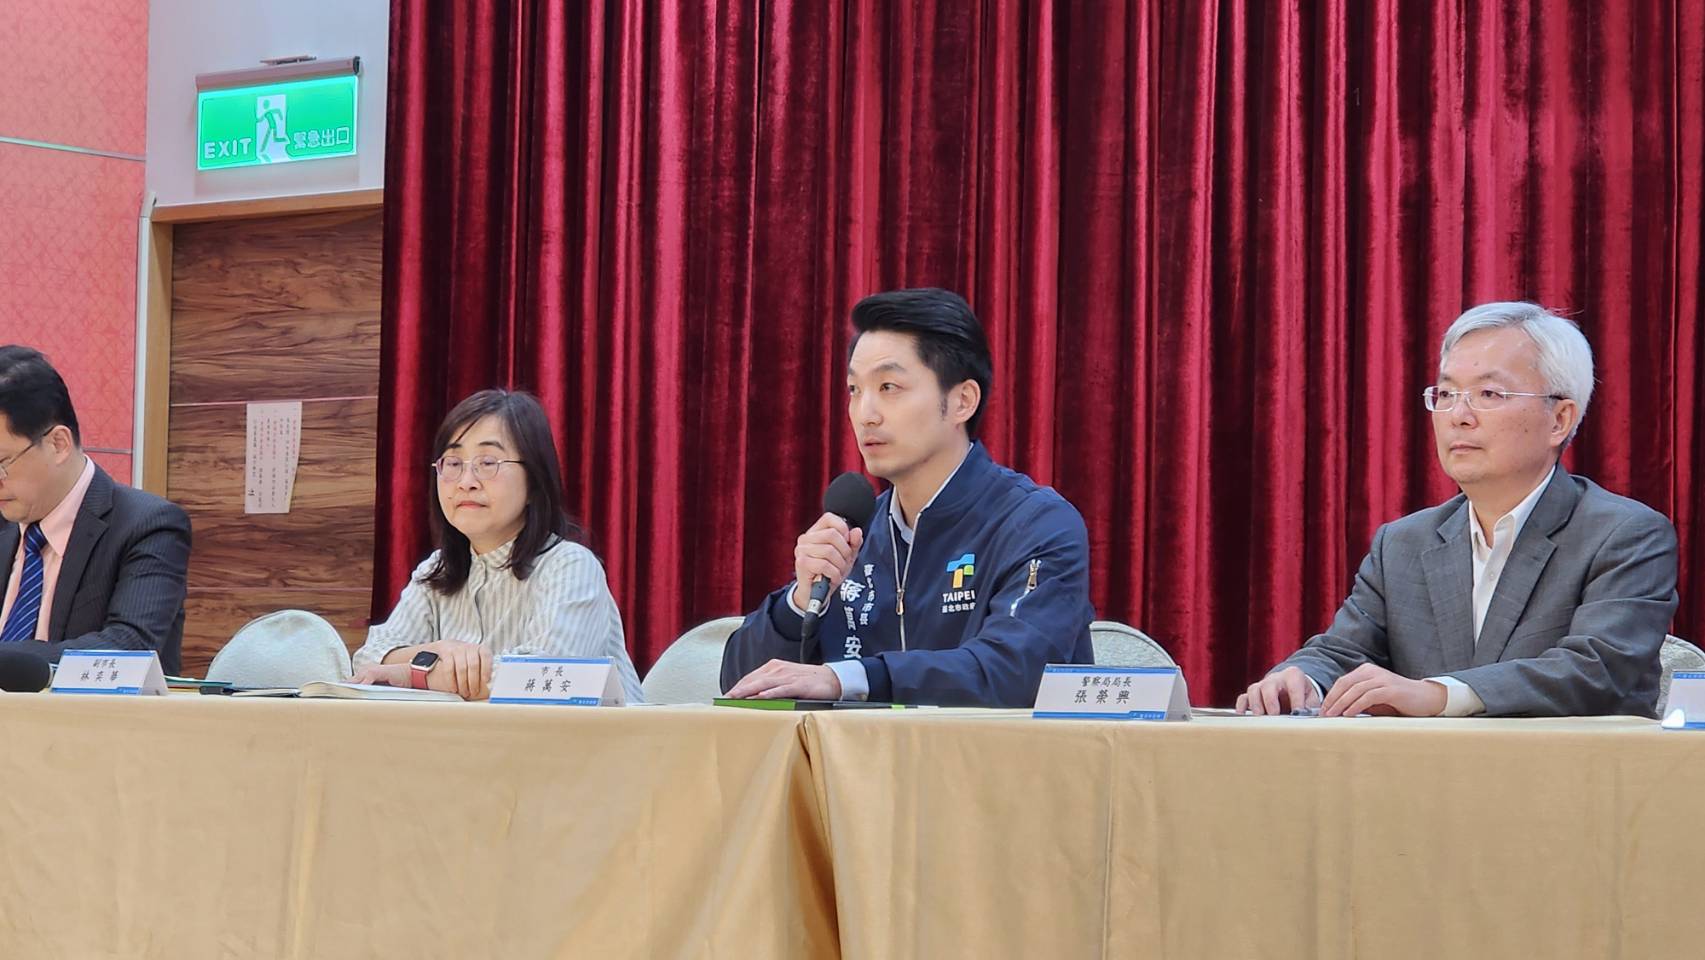 台北市长蒋万安下午举行宝林案说明记者会。记者杨正海／摄影